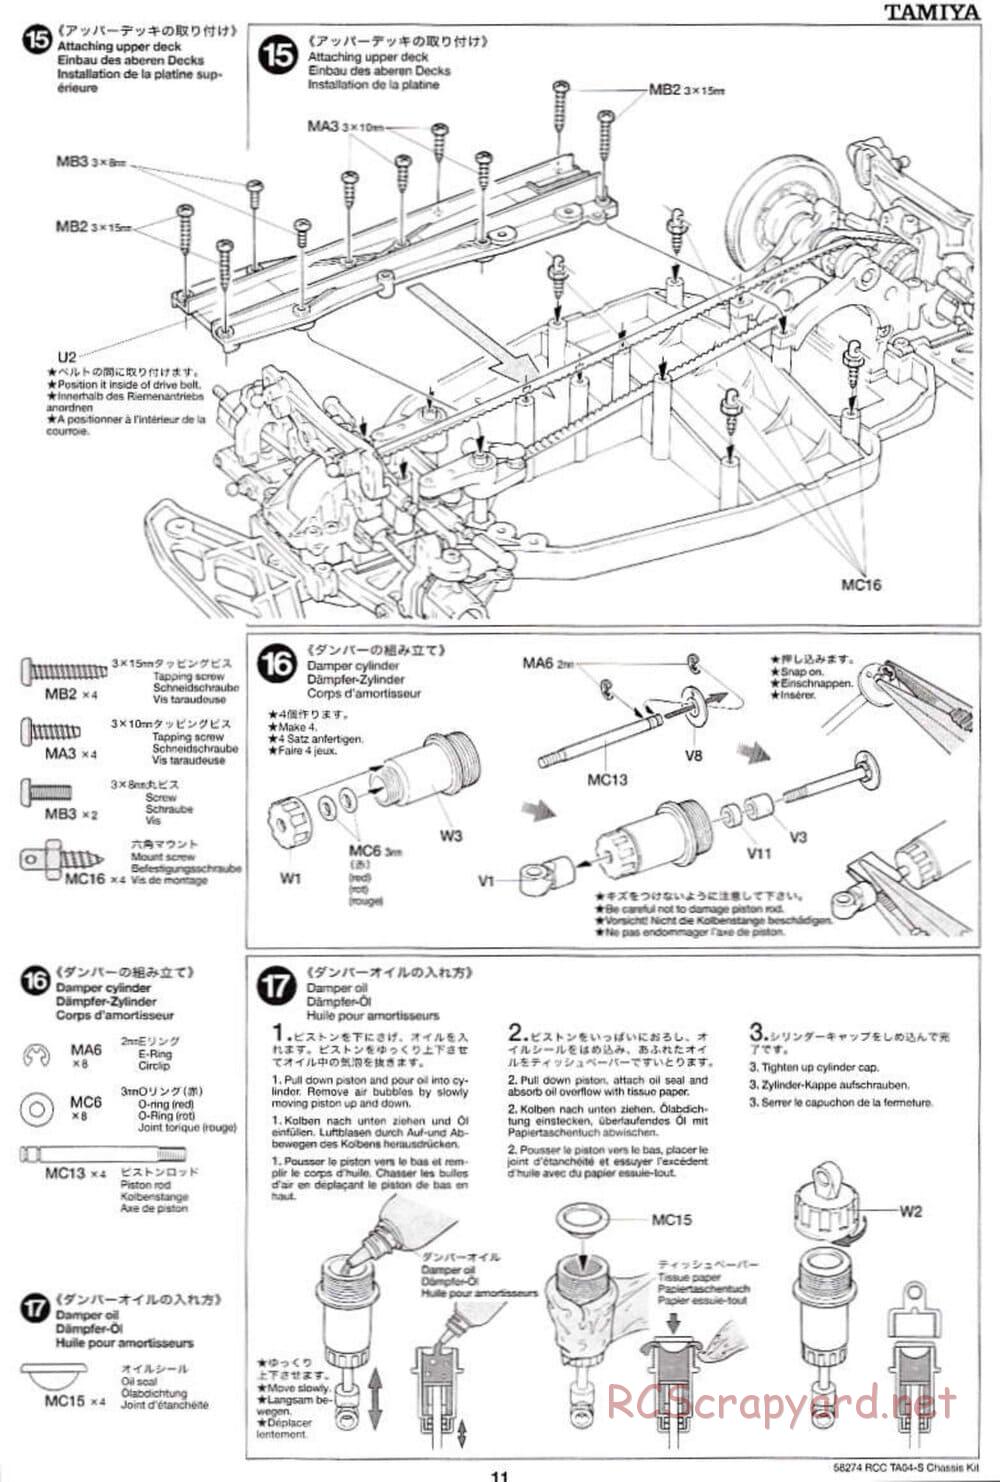 Tamiya - TA-04S Chassis - Manual - Page 11